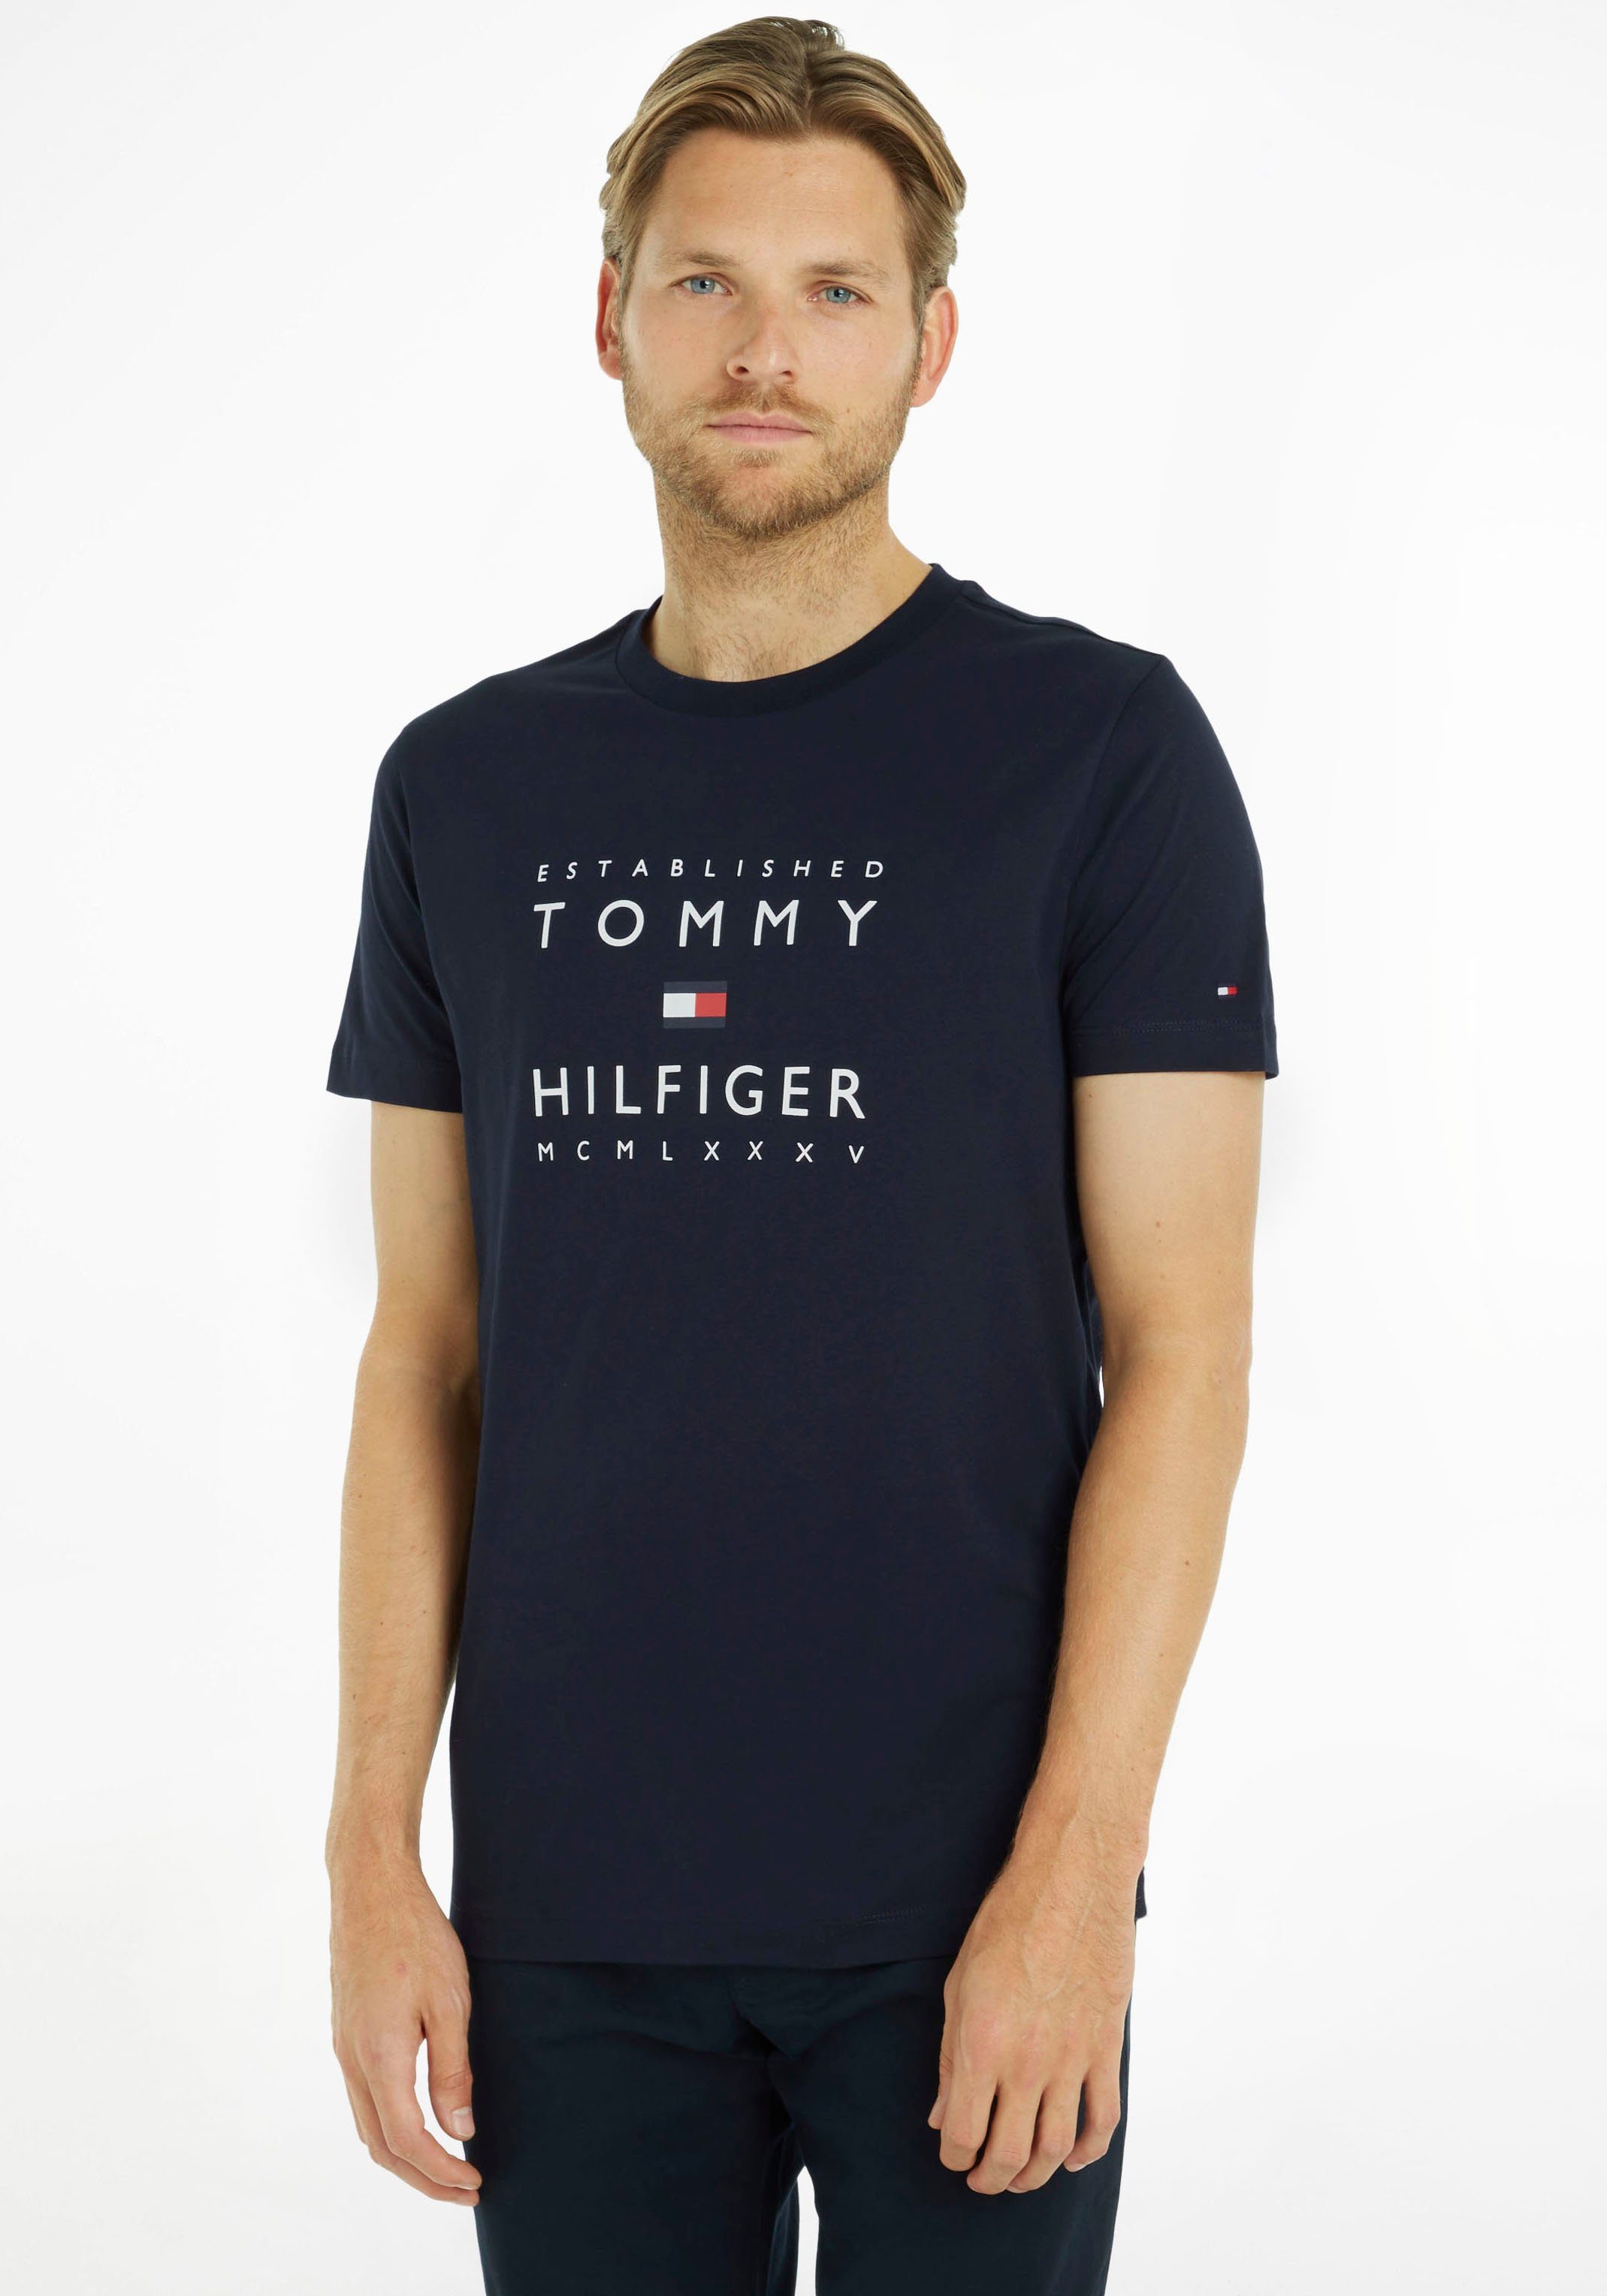 Tommy Hilfiger T-Shirt ESTABLISHED STACKED TEE mit Rippsband in Labelfarben am Ausschnitt dunkelblau